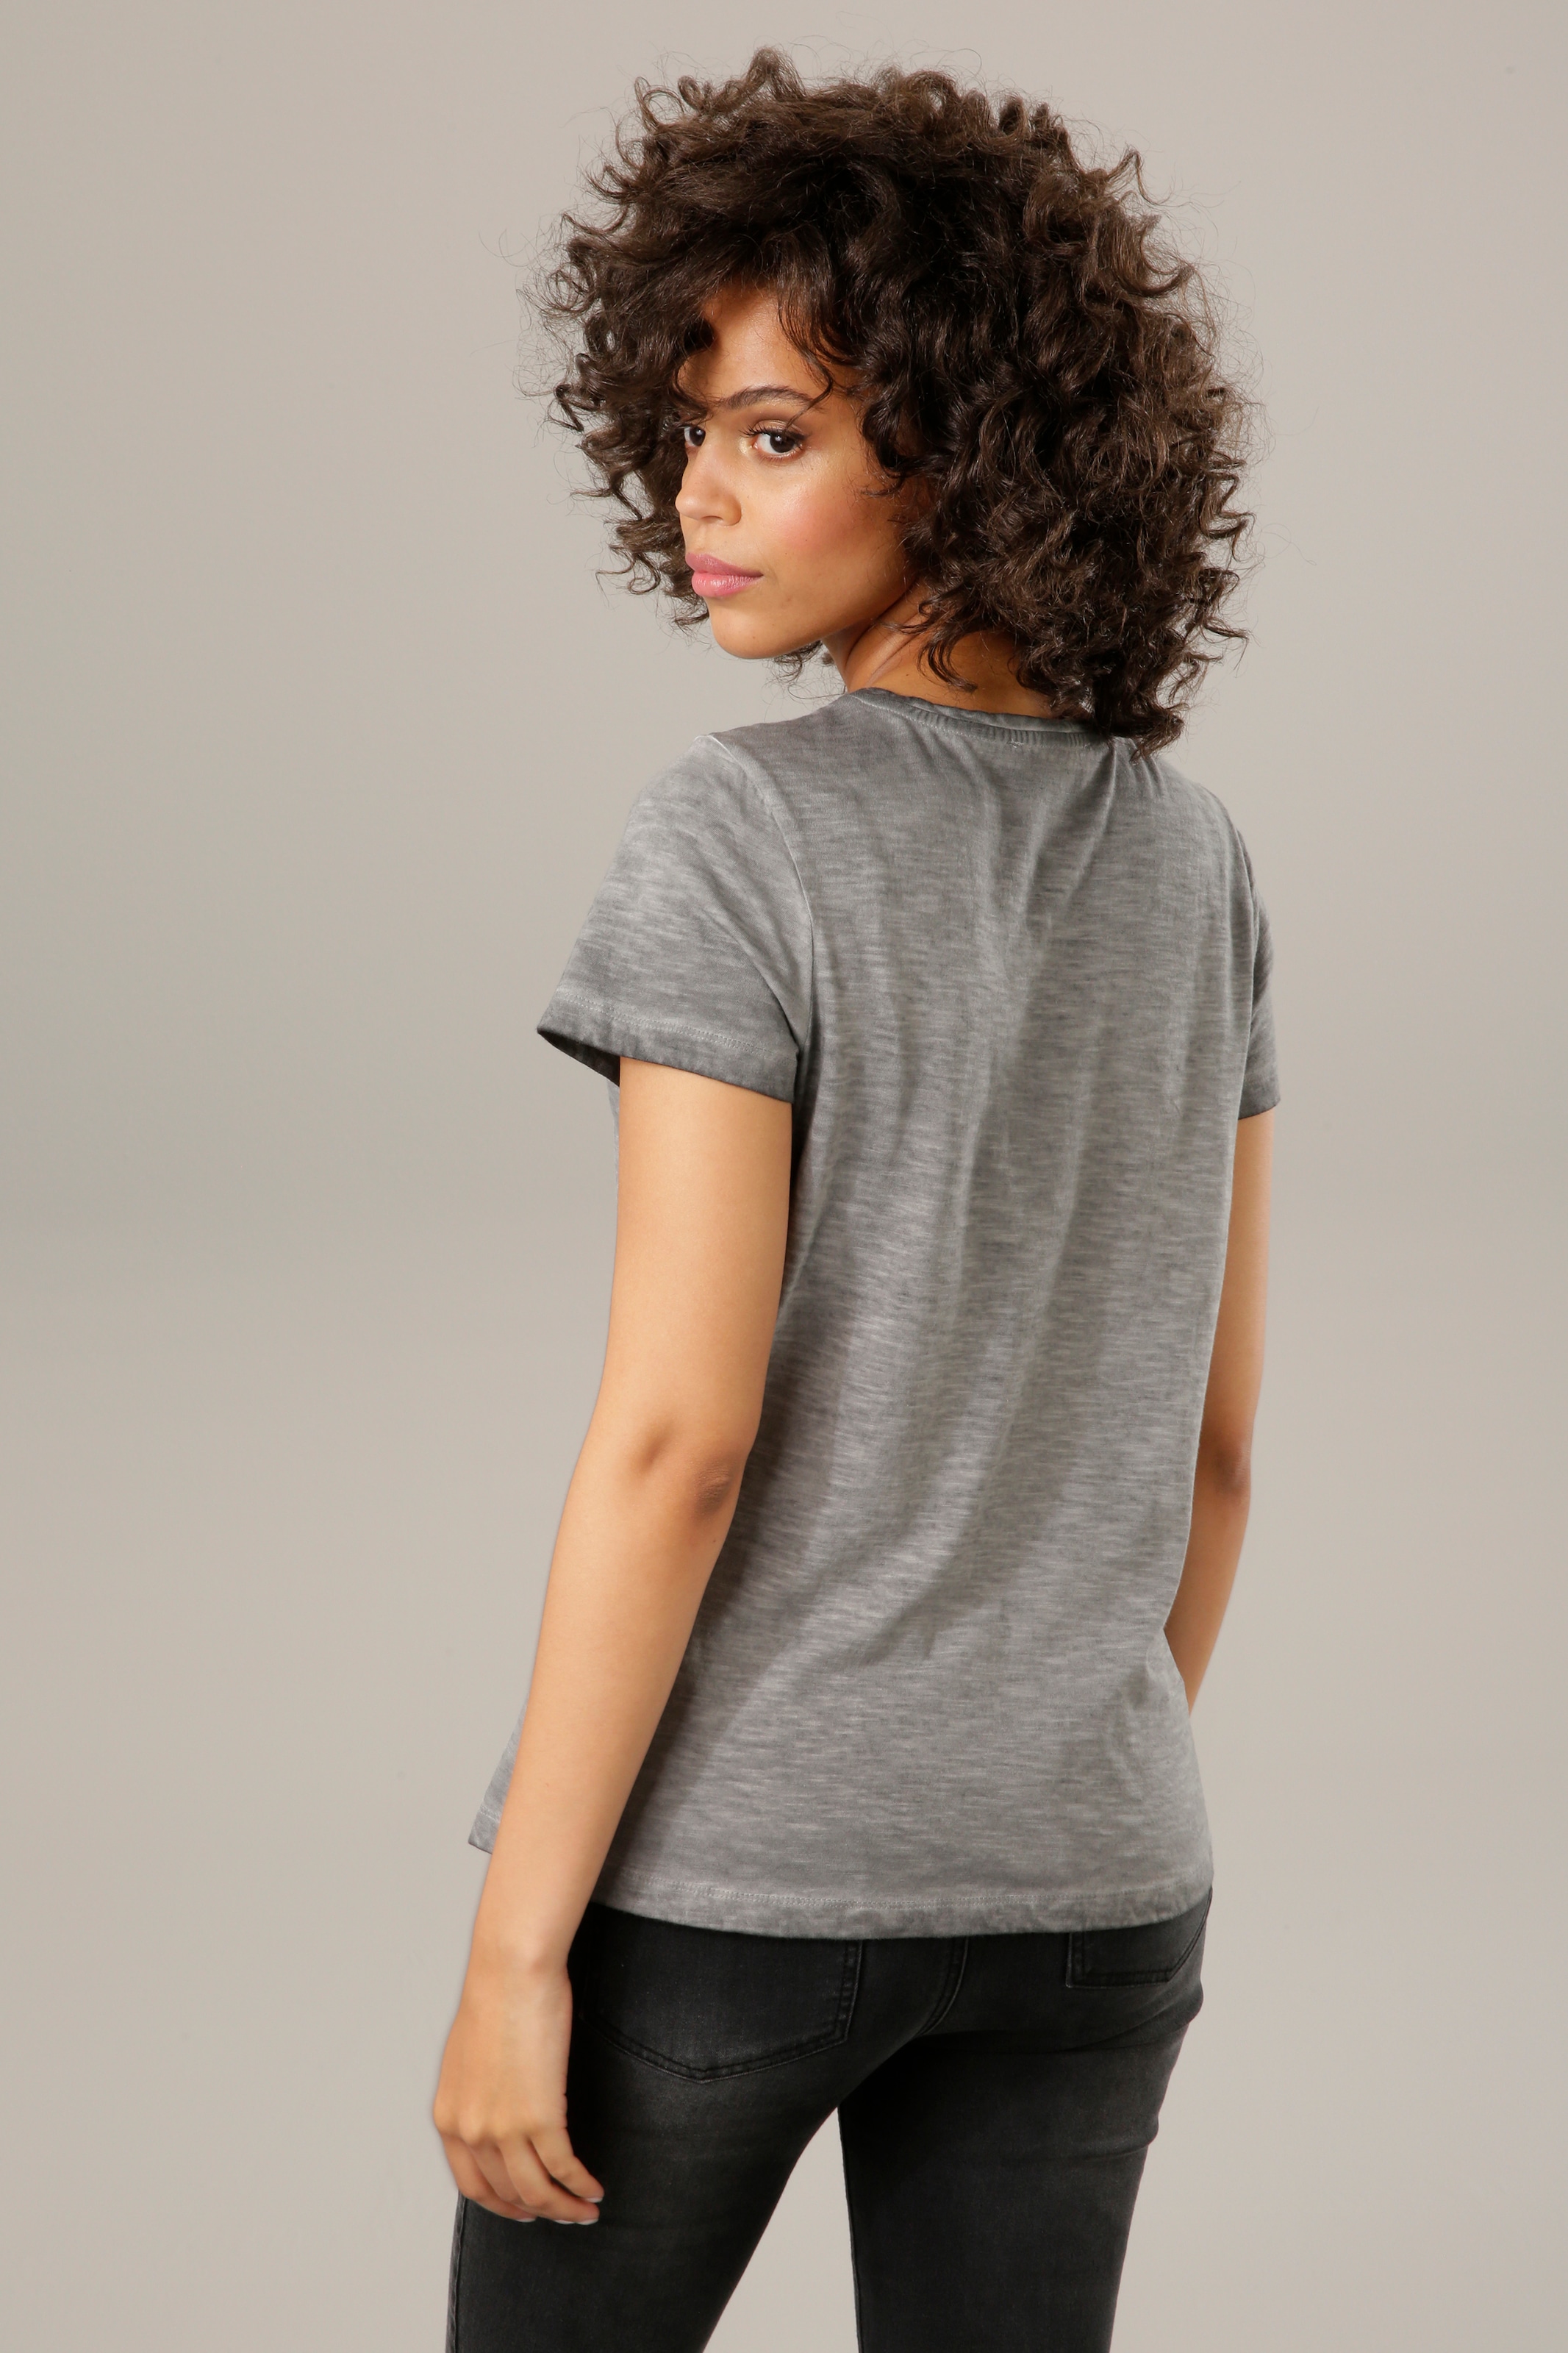 Aniston CASUAL T-Shirt, mit Glitzersteinchen verzierter Frontdruck online